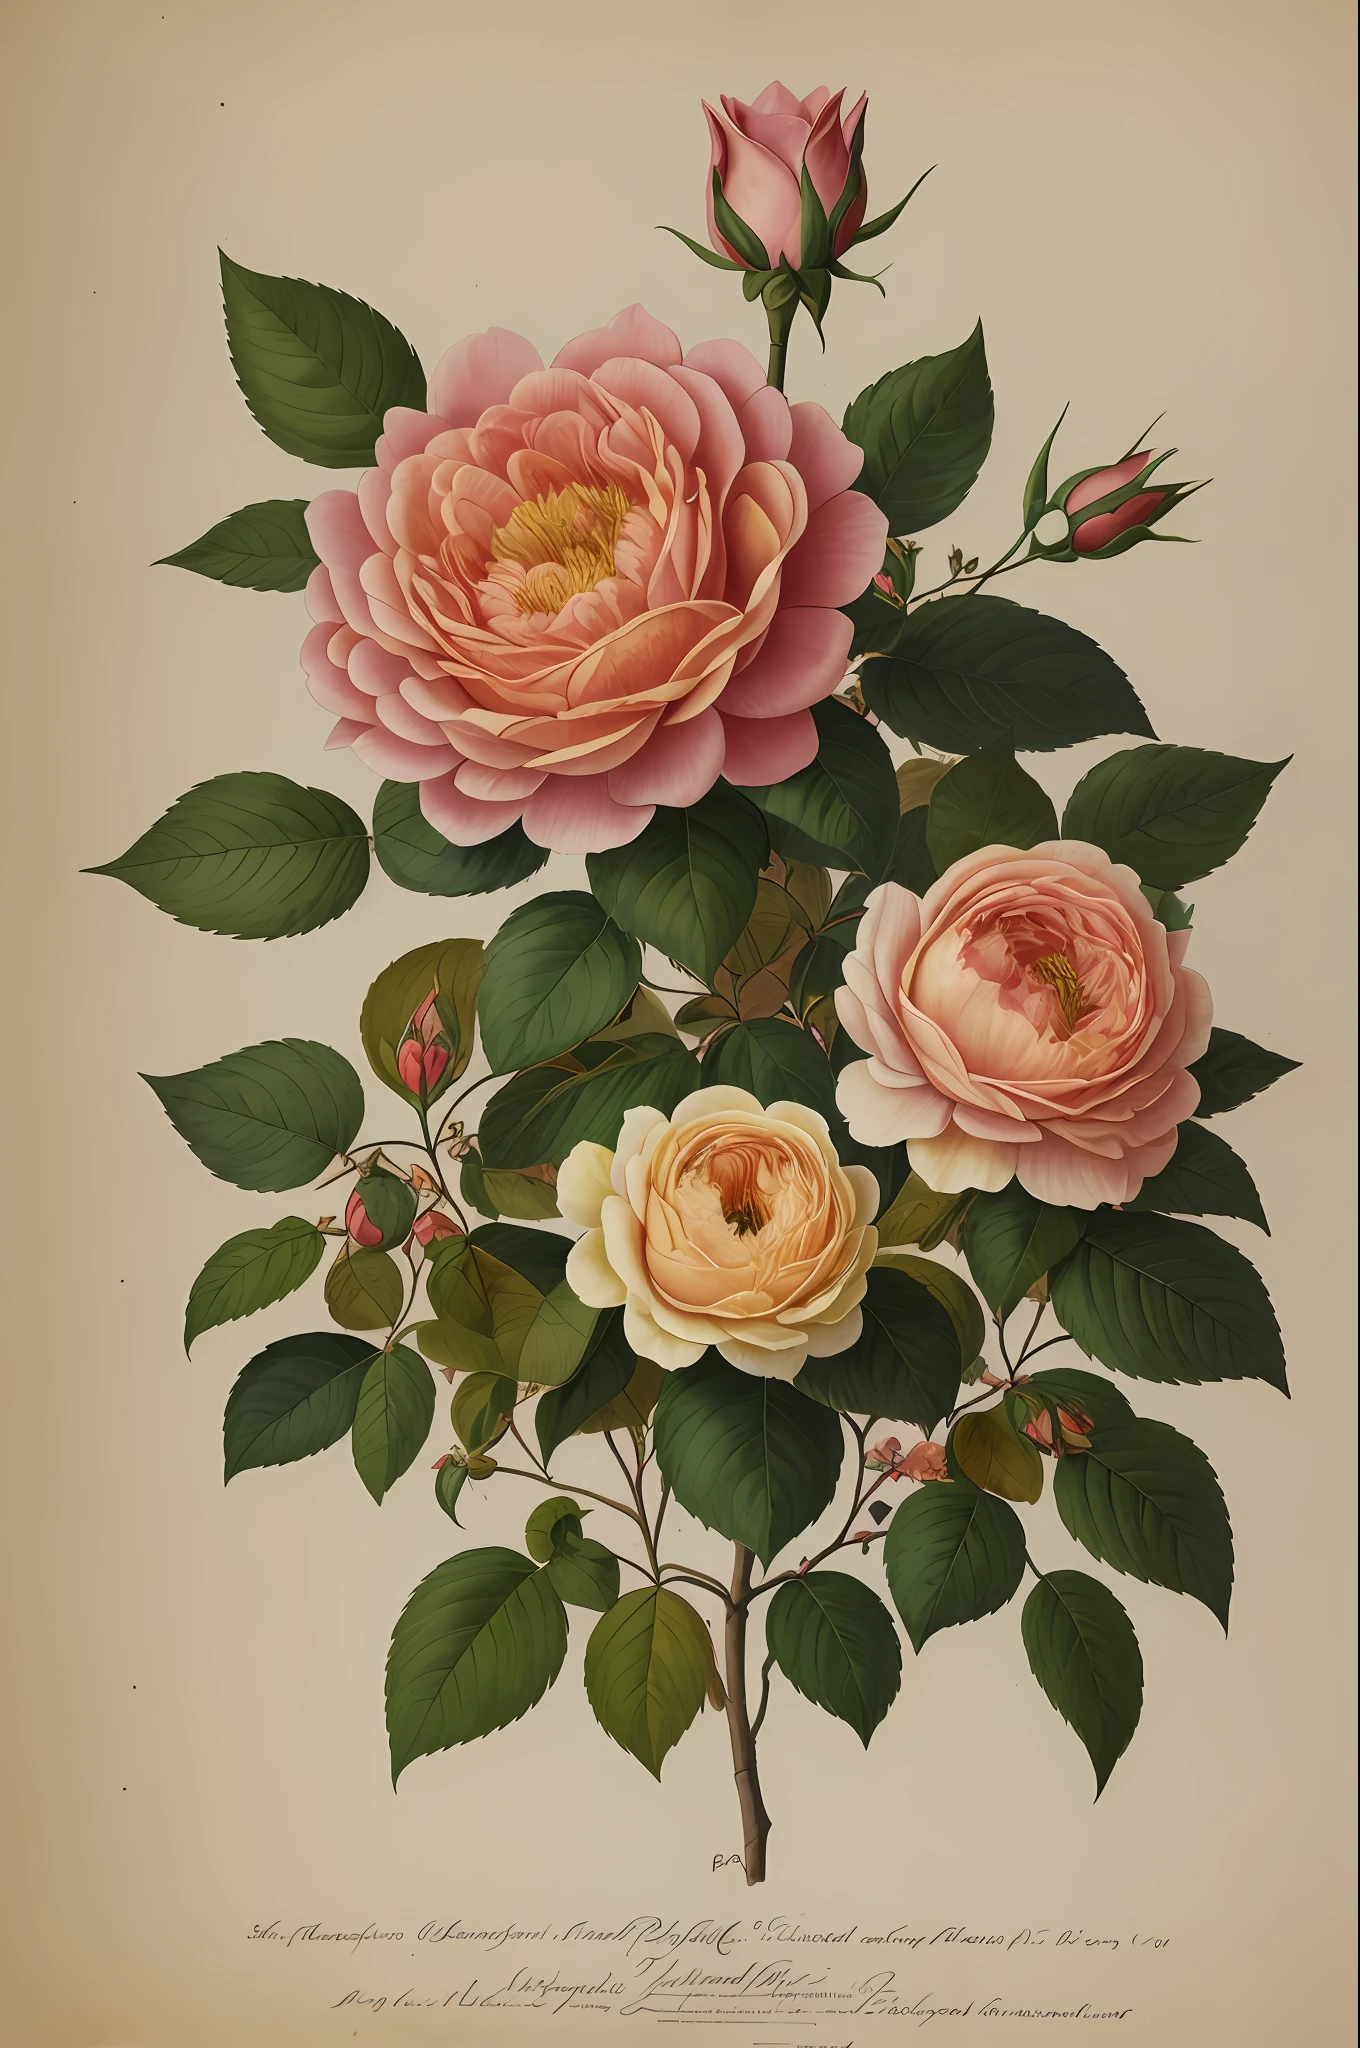 (Лучшее качество:1.2), (подробный:1.2), (шедевр:1.2), старинные ботанические иллюстрации Большой Провансальной розы (1770 1775) в высоком разрешении Джона Эдвардса